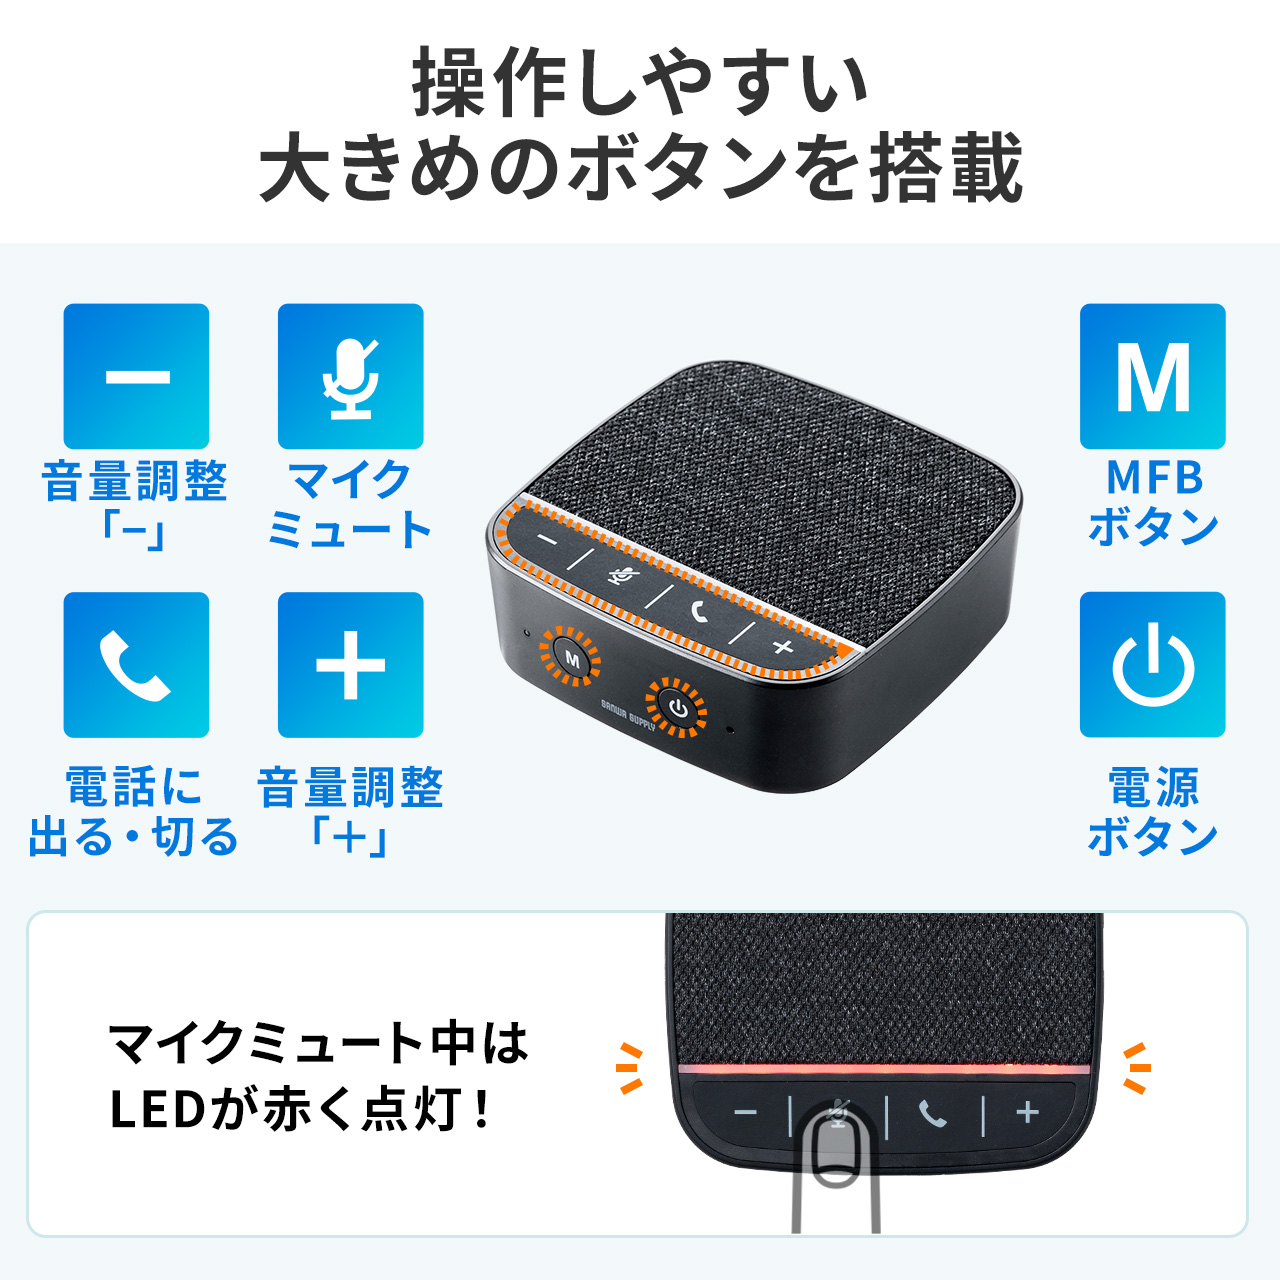 ご注意ください MM-MC28 【WEB会議小型スピーカーフォン】 スピーカー